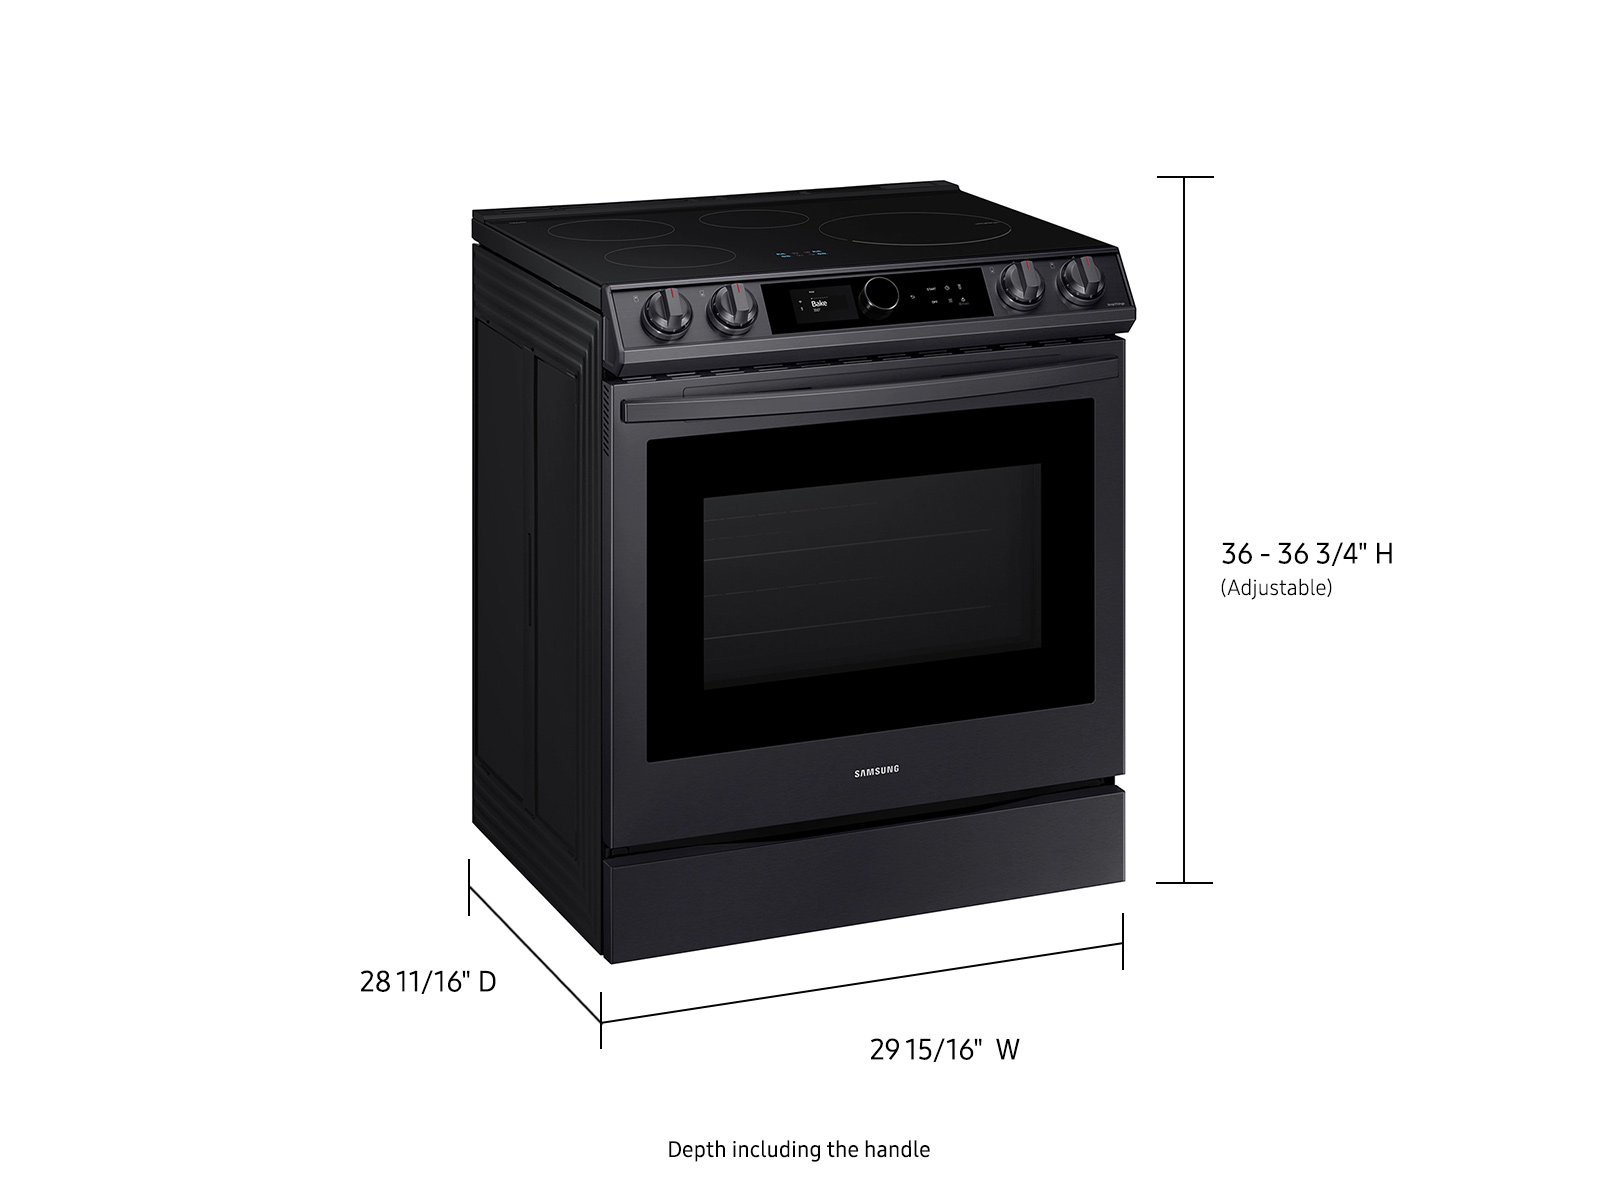 https://image-us.samsung.com/SamsungUS/home/home-appliances/refrigerators/112221/NE63T8911SG_08_Black_SCOM.jpg?$product-details-jpg$